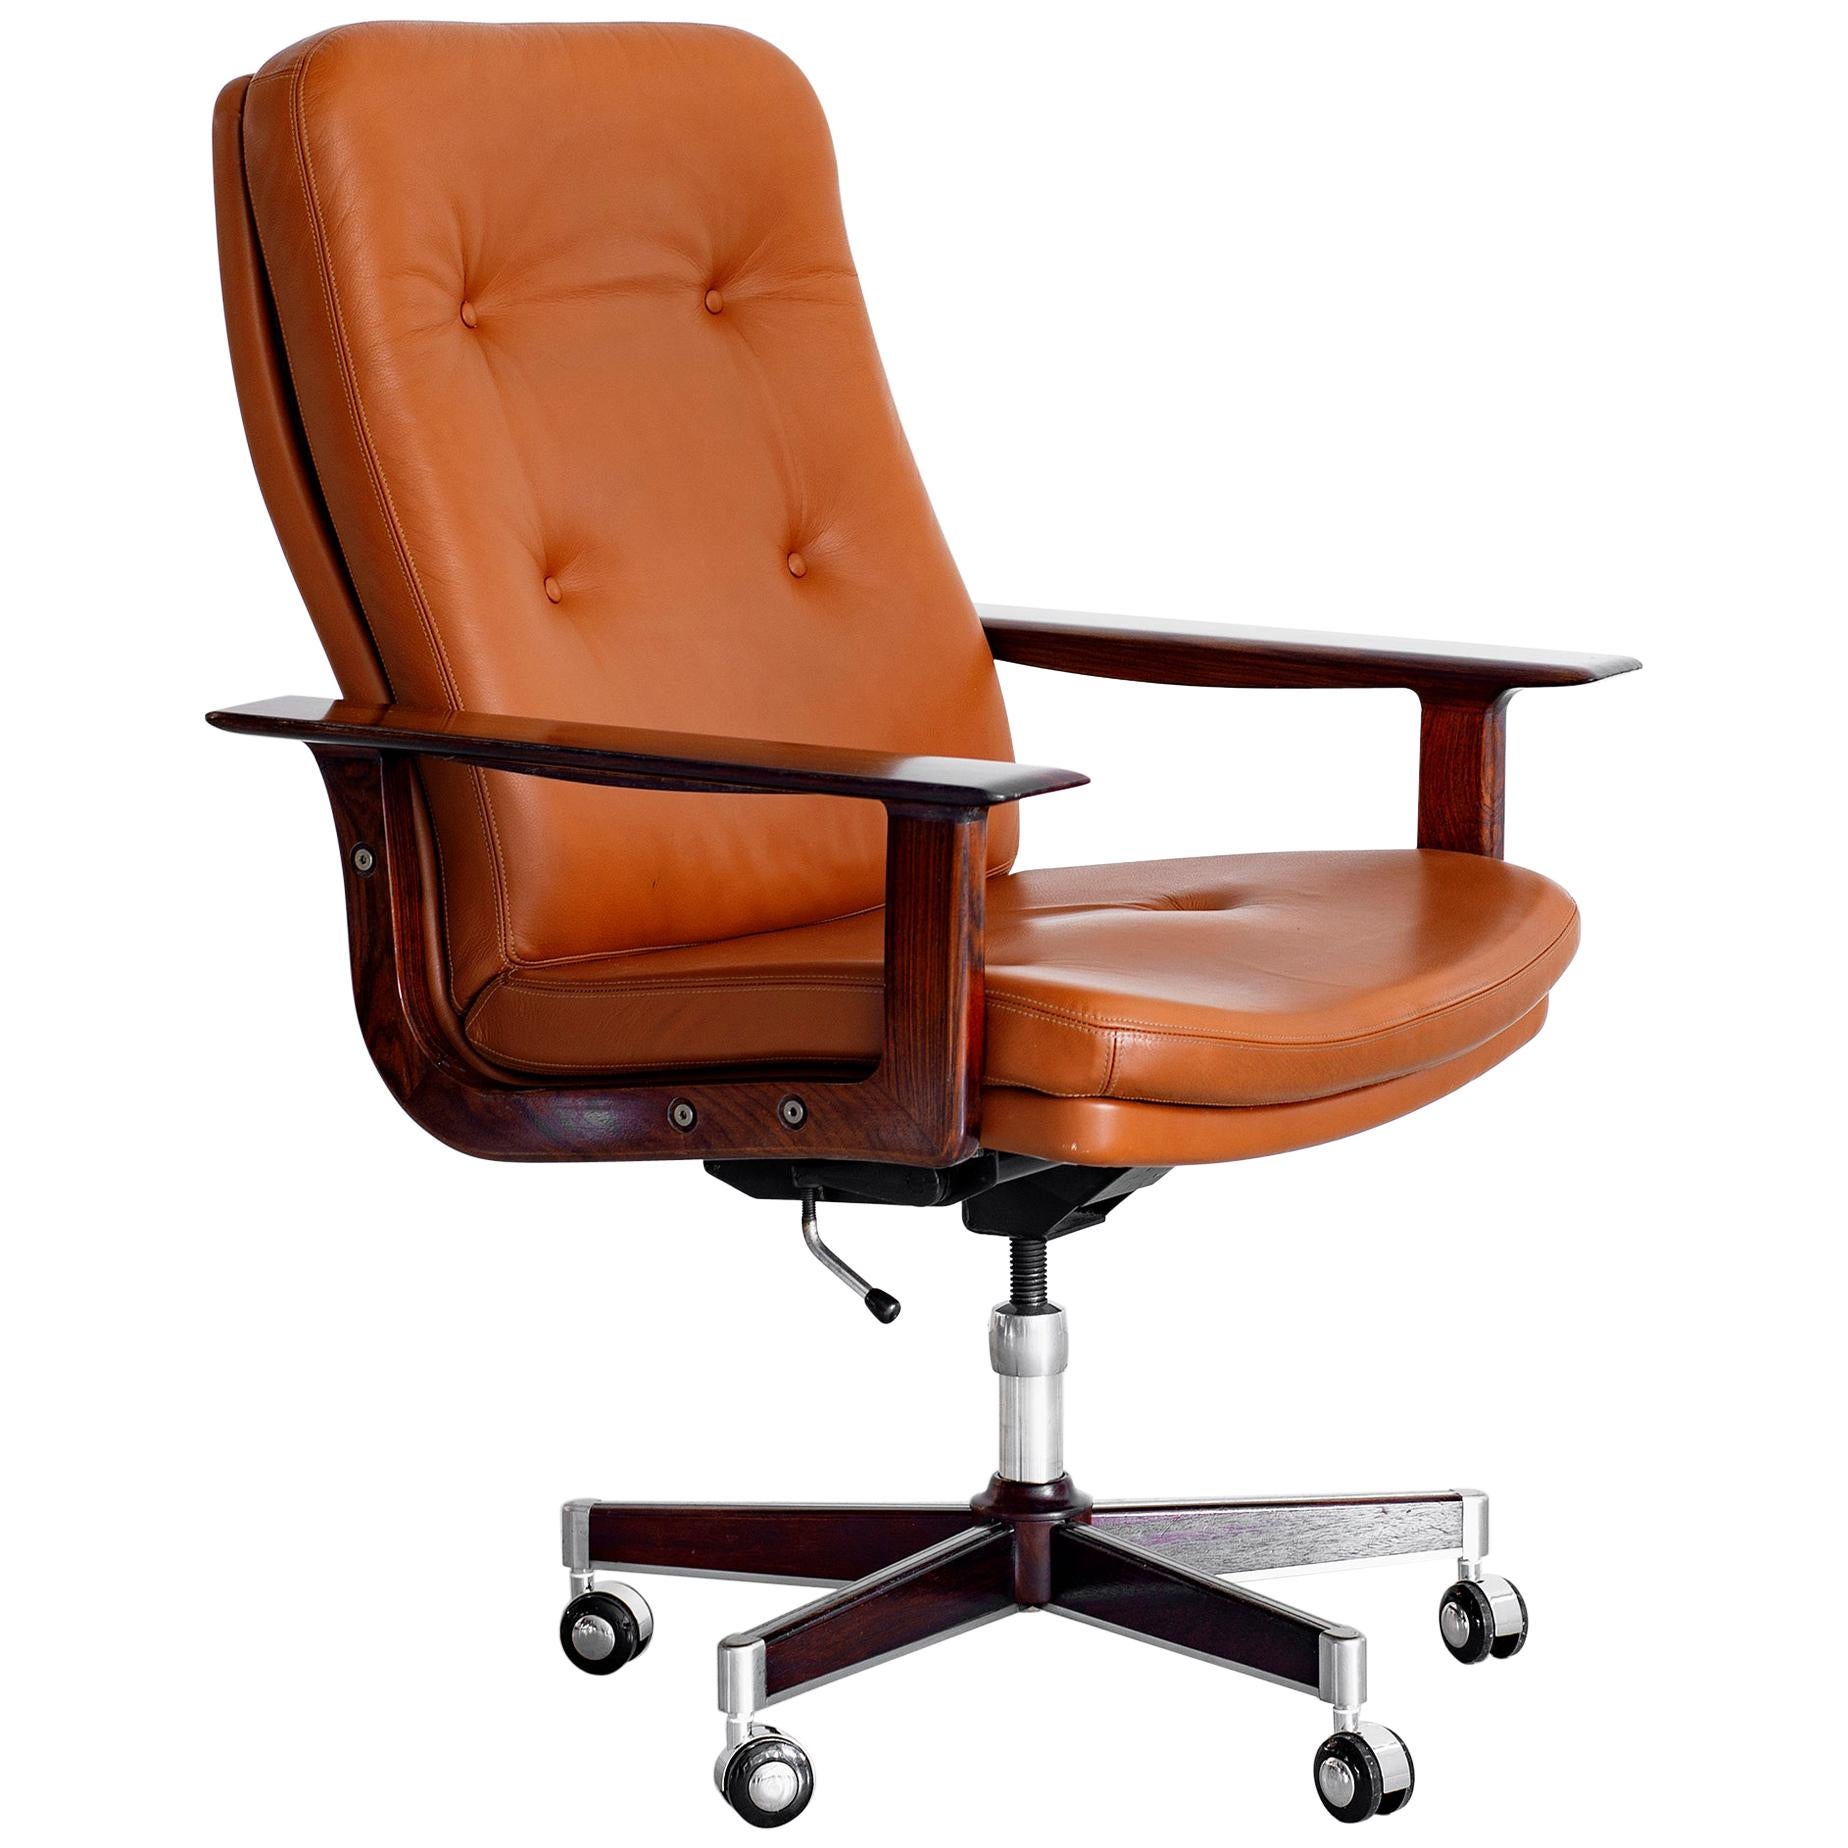 Rare Arne Vodder Office Chair